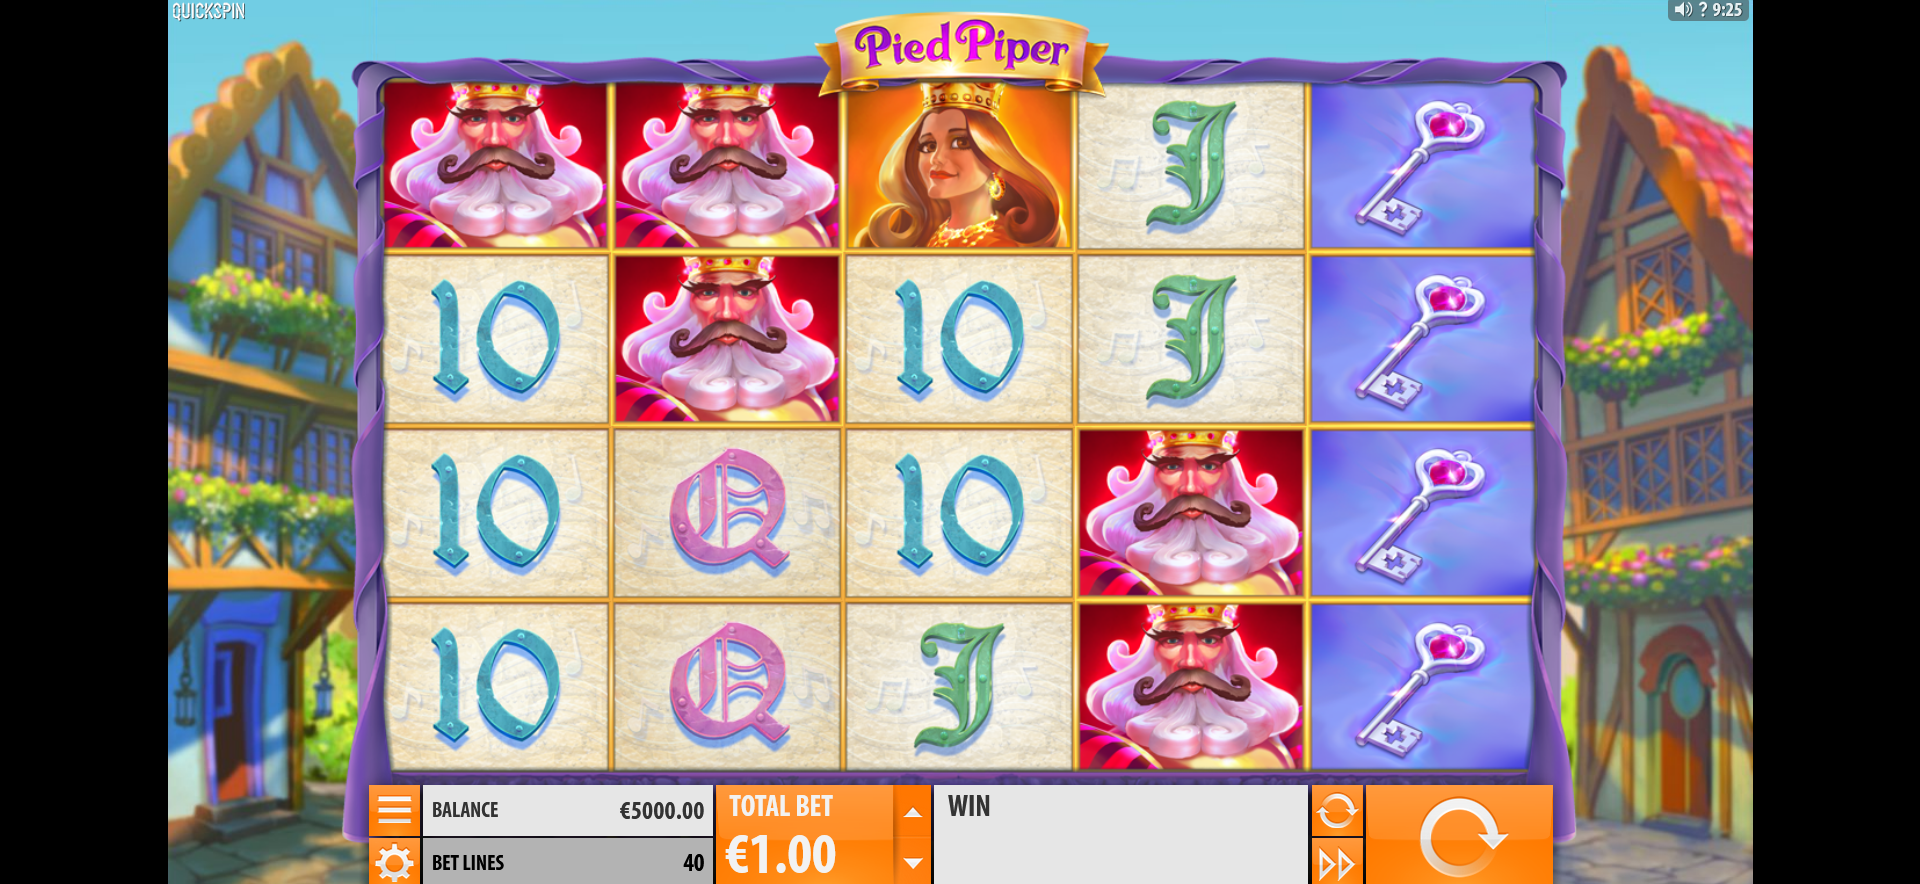 schermata del gioco slot machine pied piper